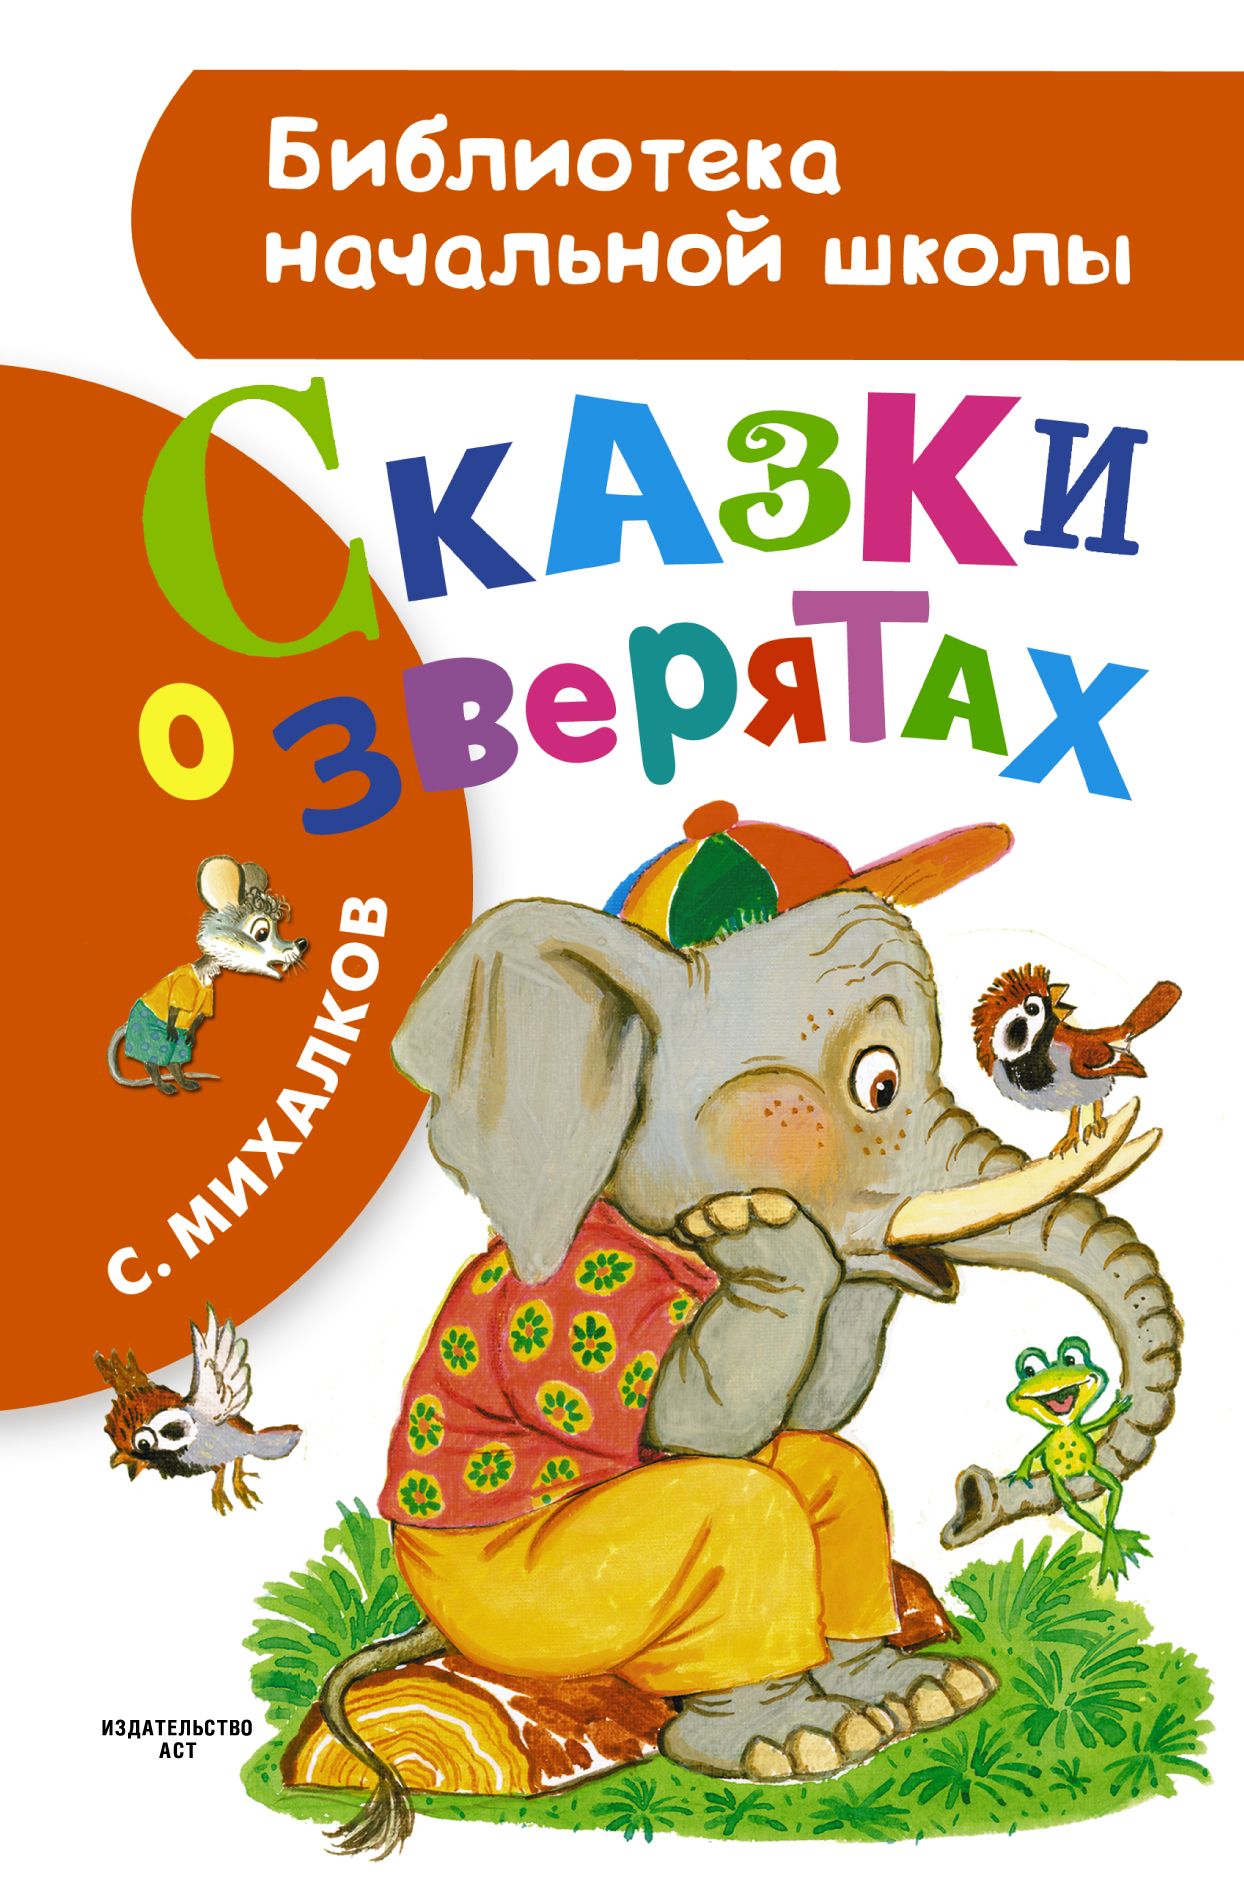 Сказки сергея владимировича михалкова. Книги Михалкова для детей. Михалков книги для детей.